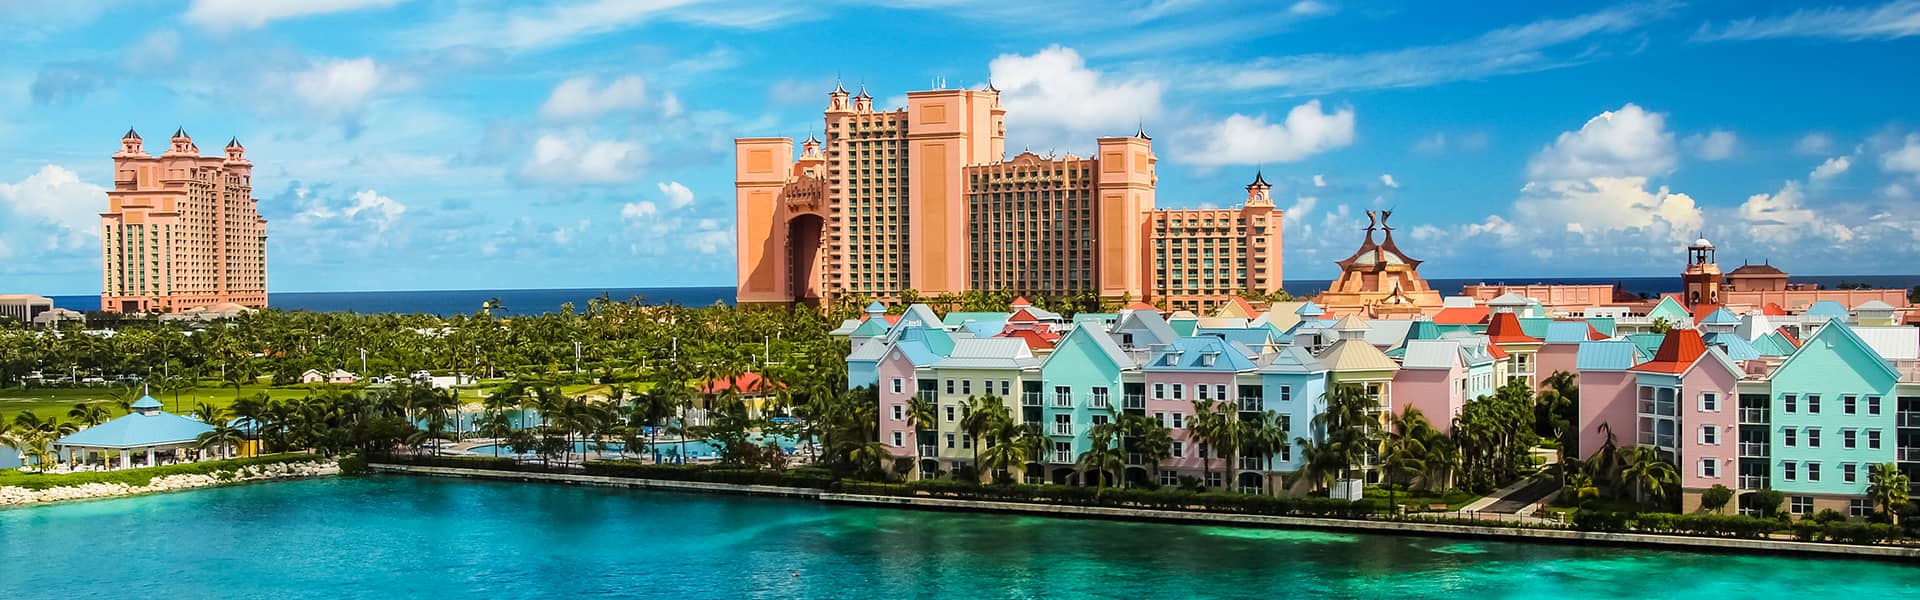 Bahamas : Great Stirrup Cay, Key West et Nassau